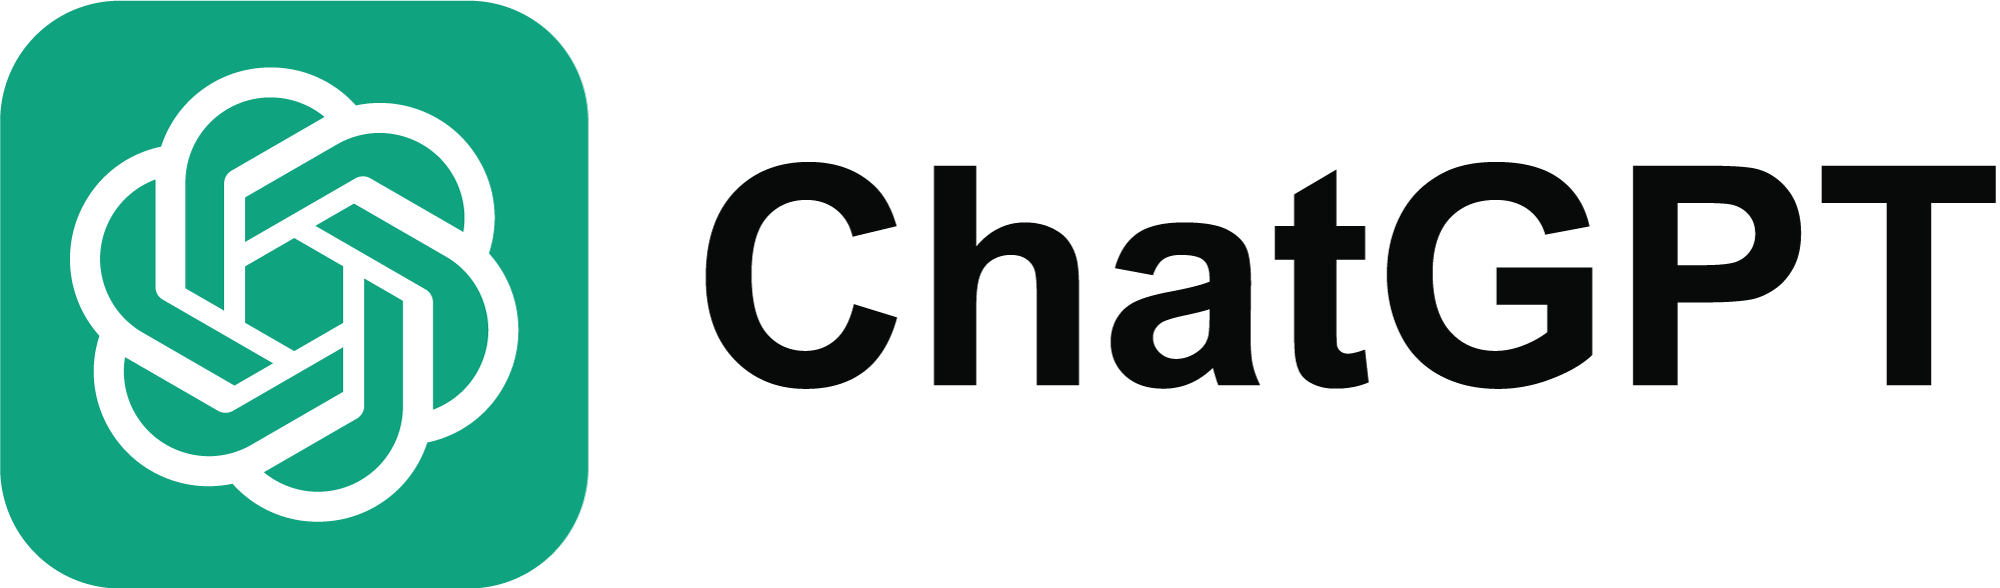 ChatGPT Icon Logo title=